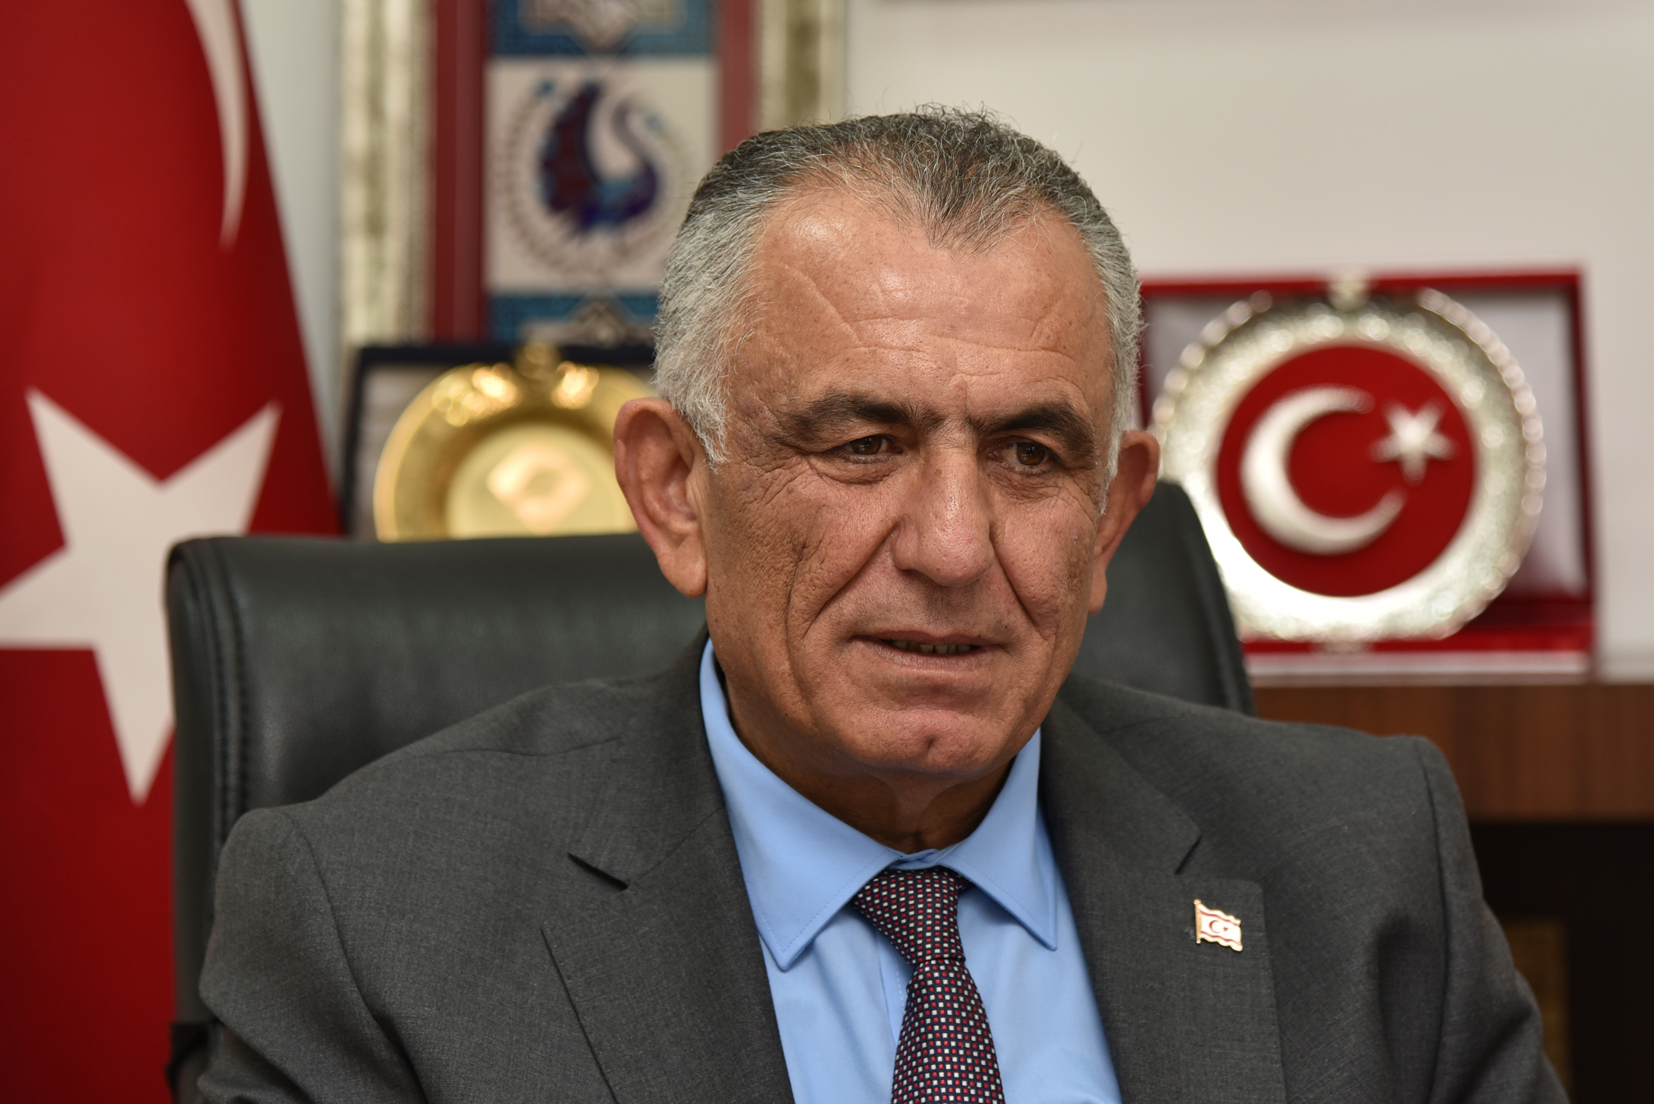 Çavuşoğlu, “Yerleşkeyle İlgili Eylemler Maksatlı Ve Anavatan Türkiye'yi Hedef Alıyor“